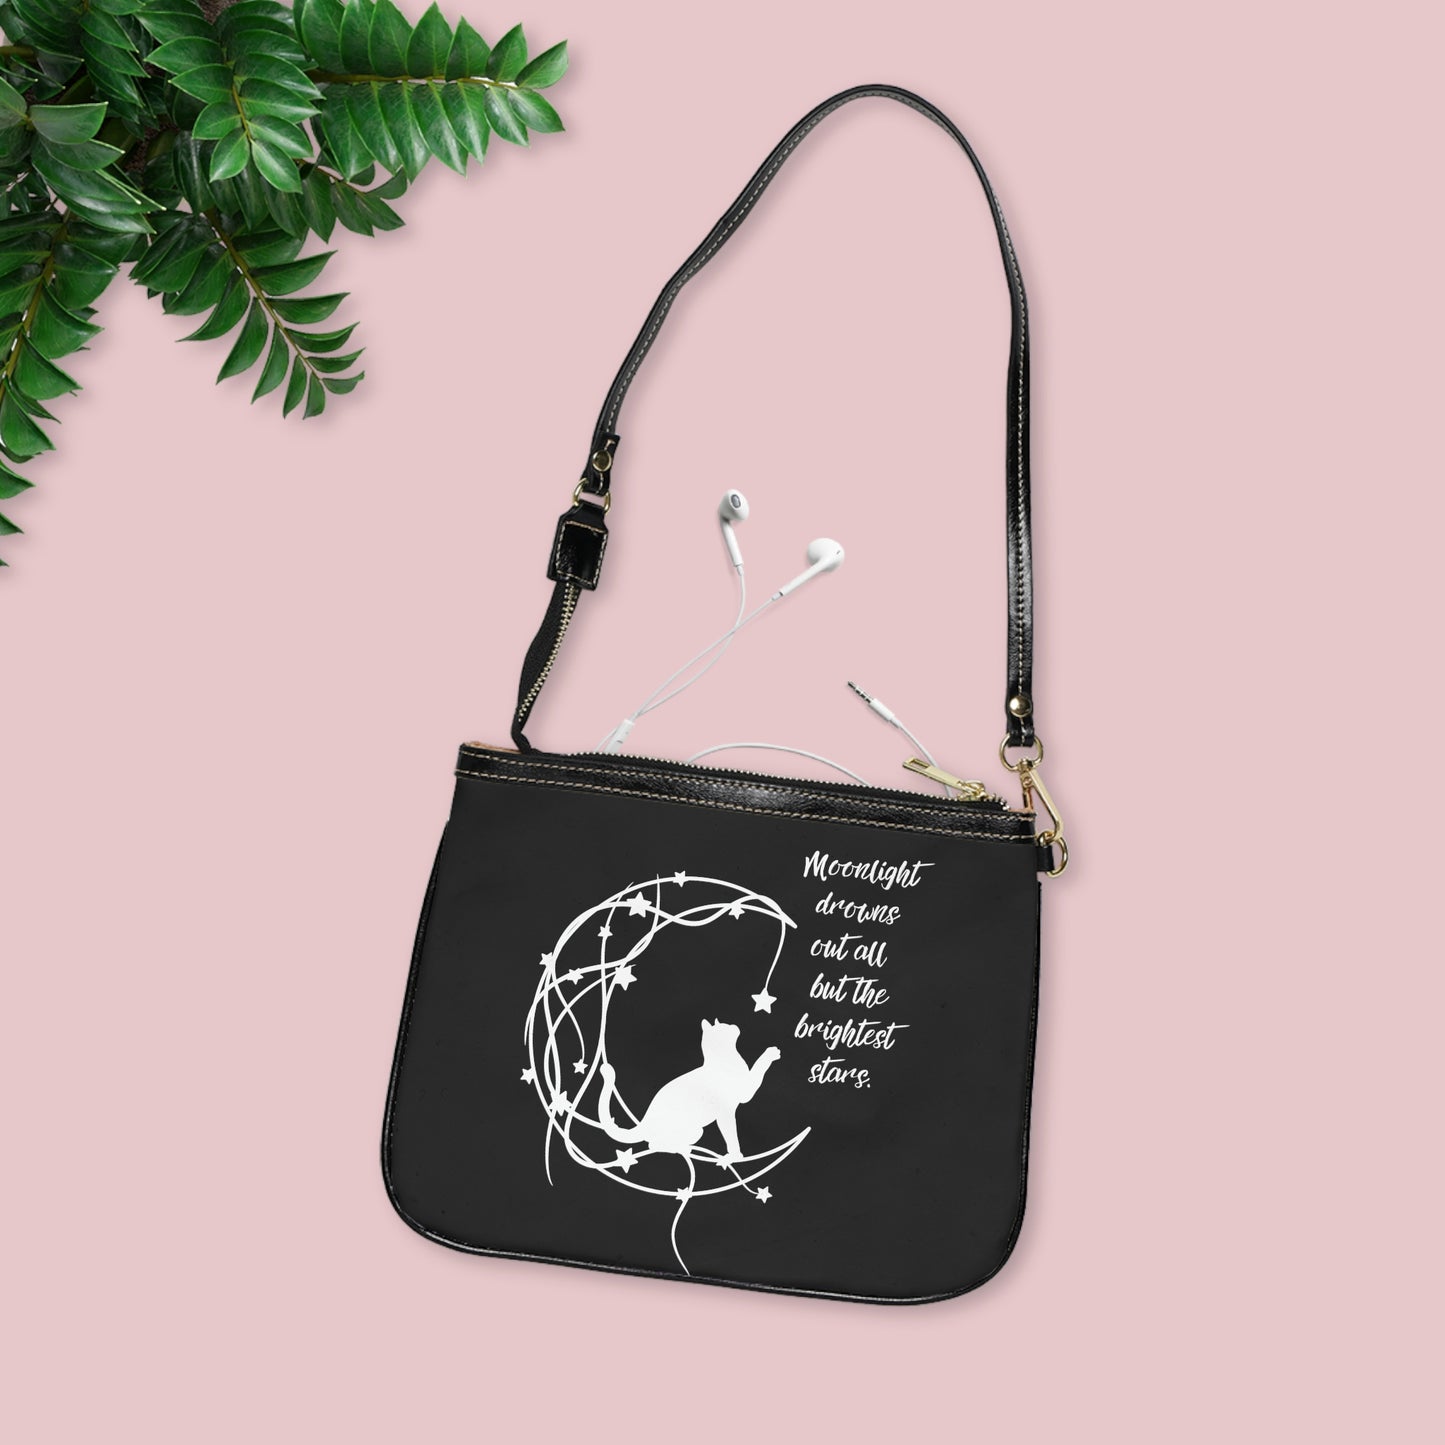 Cat and moon Small Shoulder Bag, aesthetic crossbody bag, celestial bag, cat lover gift, gift for her, dreamer gift, fantasy Small Bag